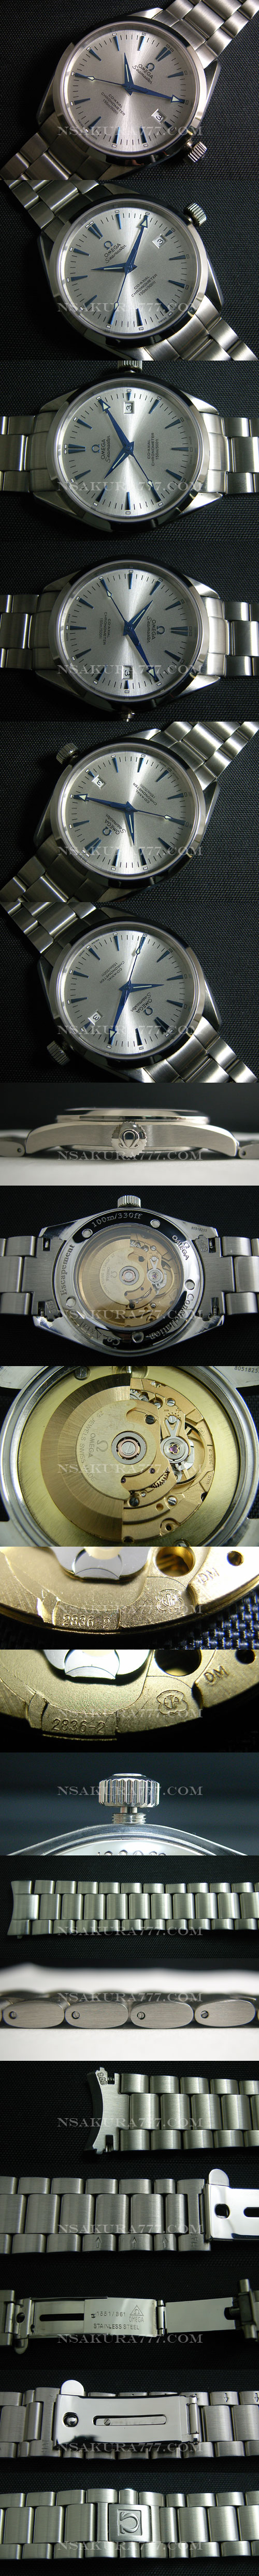 レプリカ時計オメガ自動巻廉価版 ETA 2836-2 ムーブメント 搭載 - ウインドウを閉じる